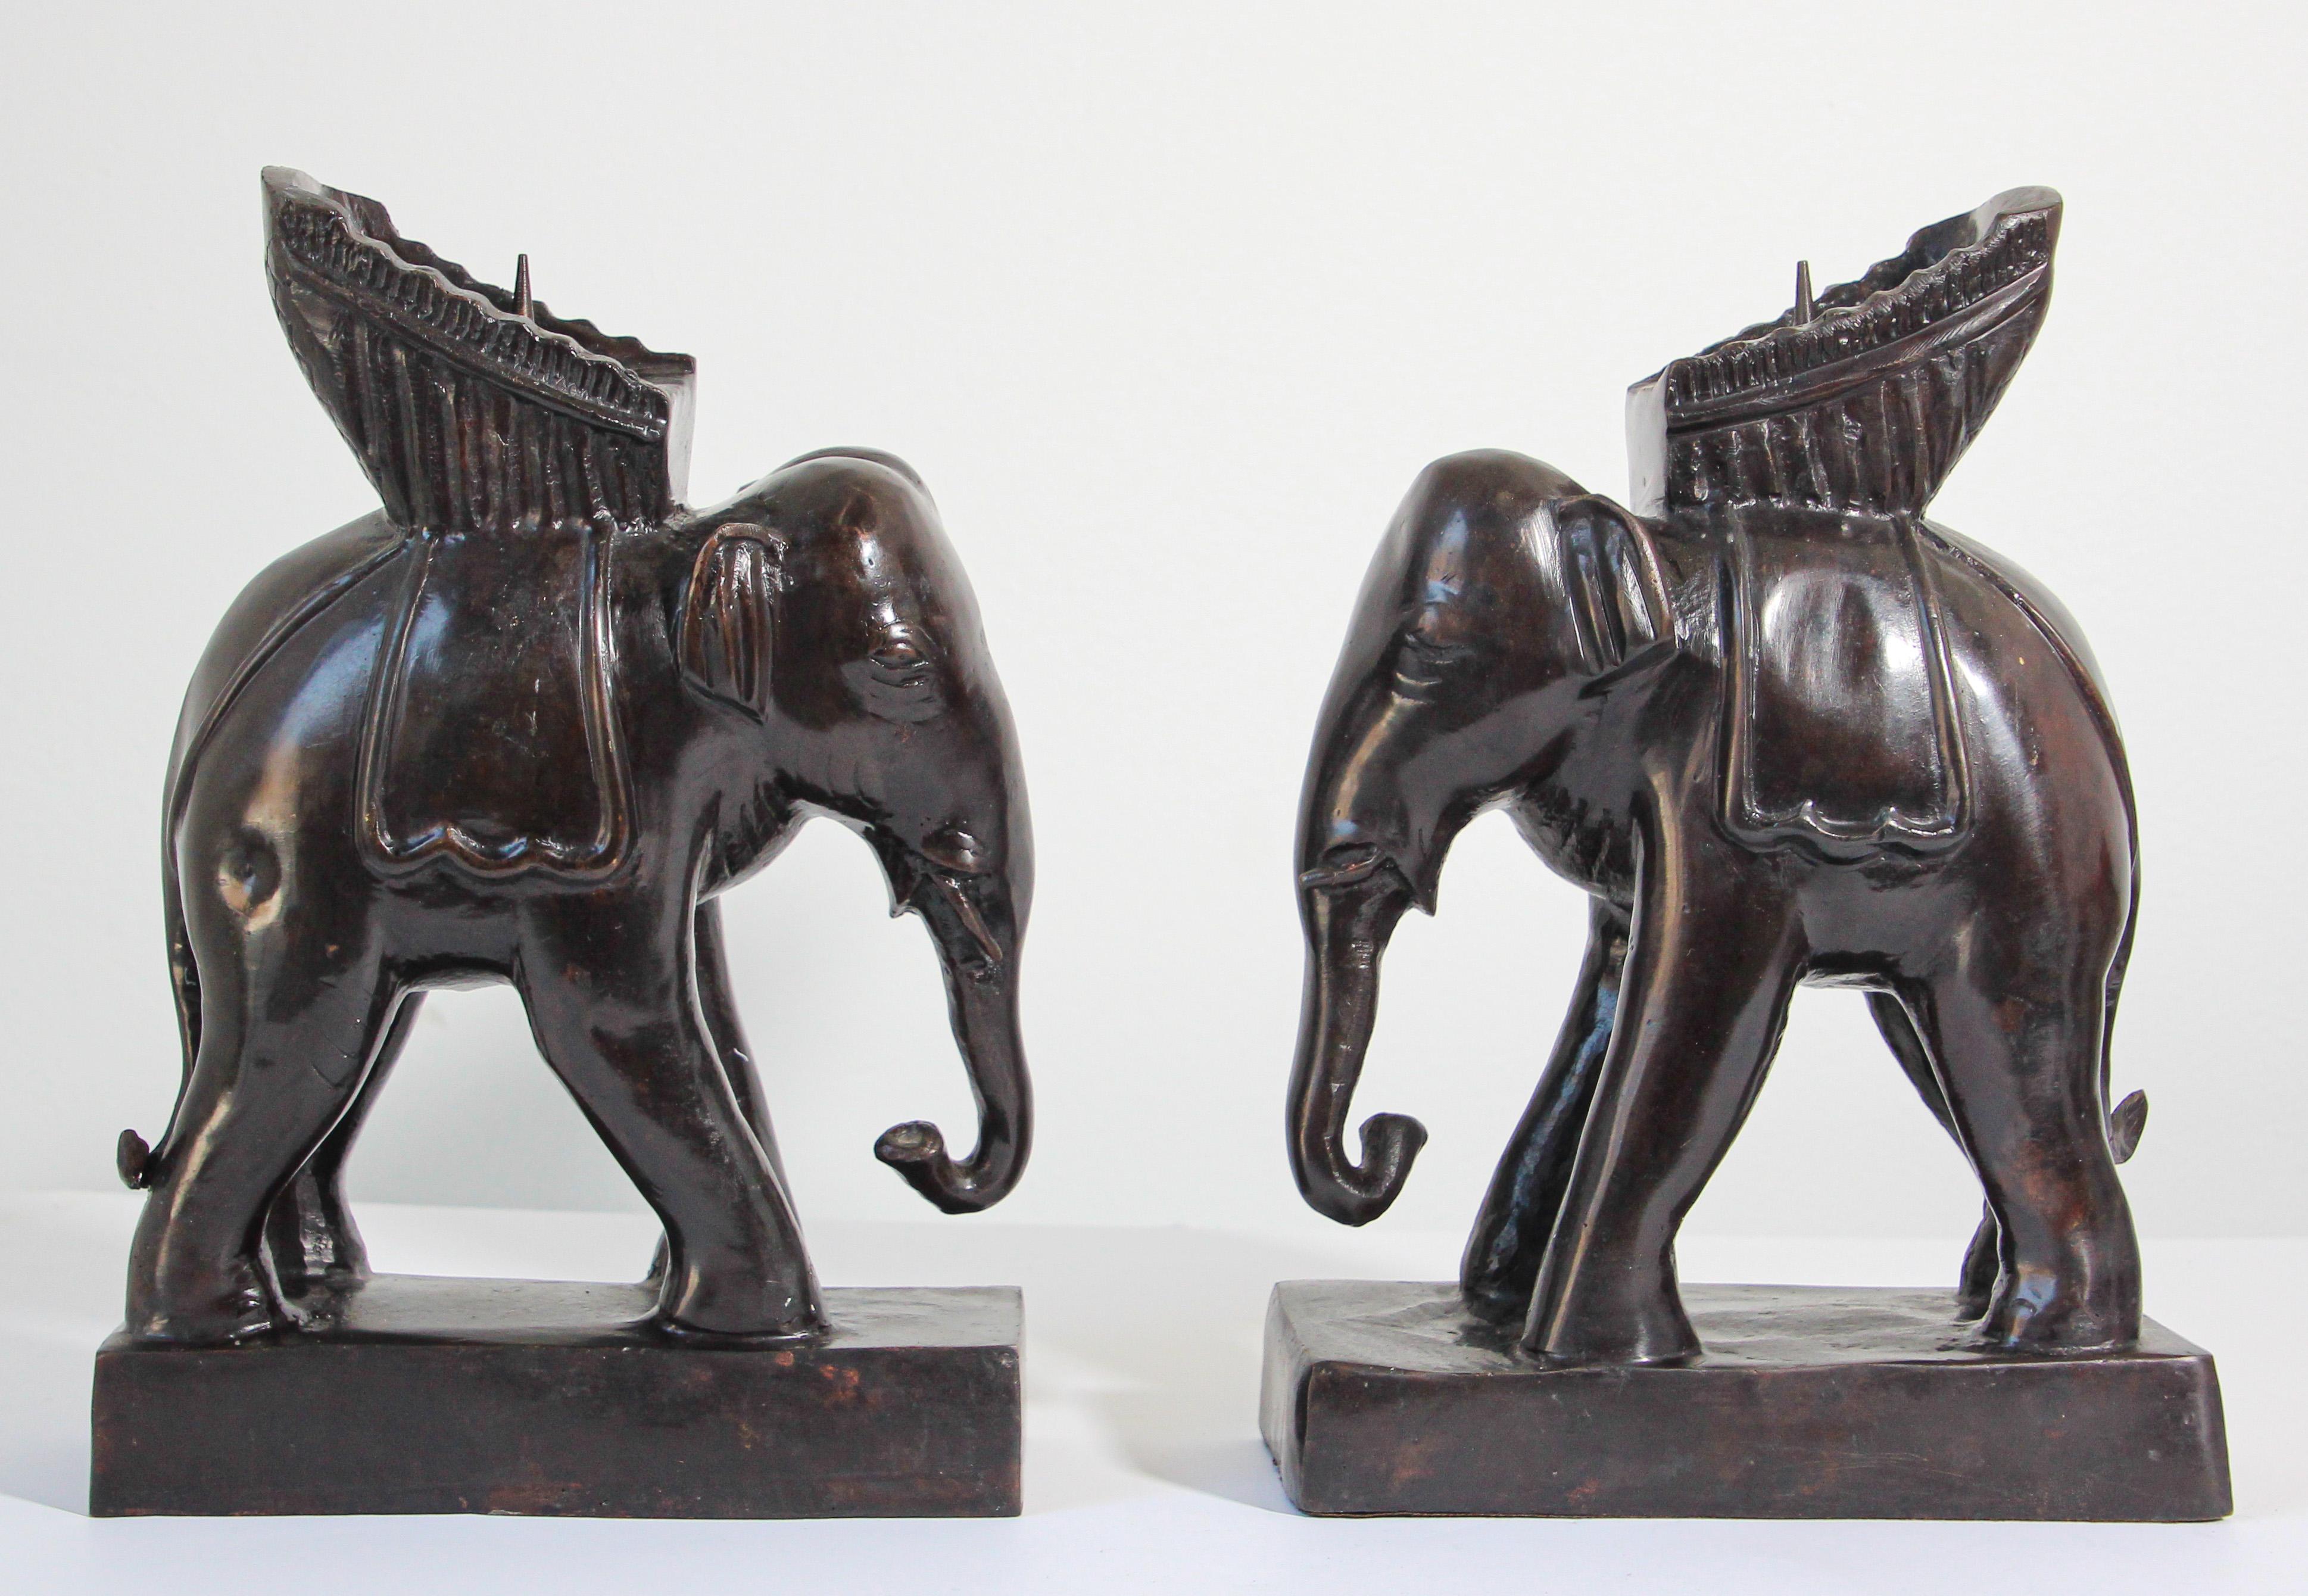 Paar Maitland Smith Elefanten-Kerzenleuchter
Paar Bronze-Elefanten Vintage Maitland-Schmiede Kerzenhalter.
Ein Paar Elefanten-Kerzenhalter von Maitland Smith, ein Kompliment für Ihren Ess- oder Konsolentisch. 
Elefanten bringen Glück und